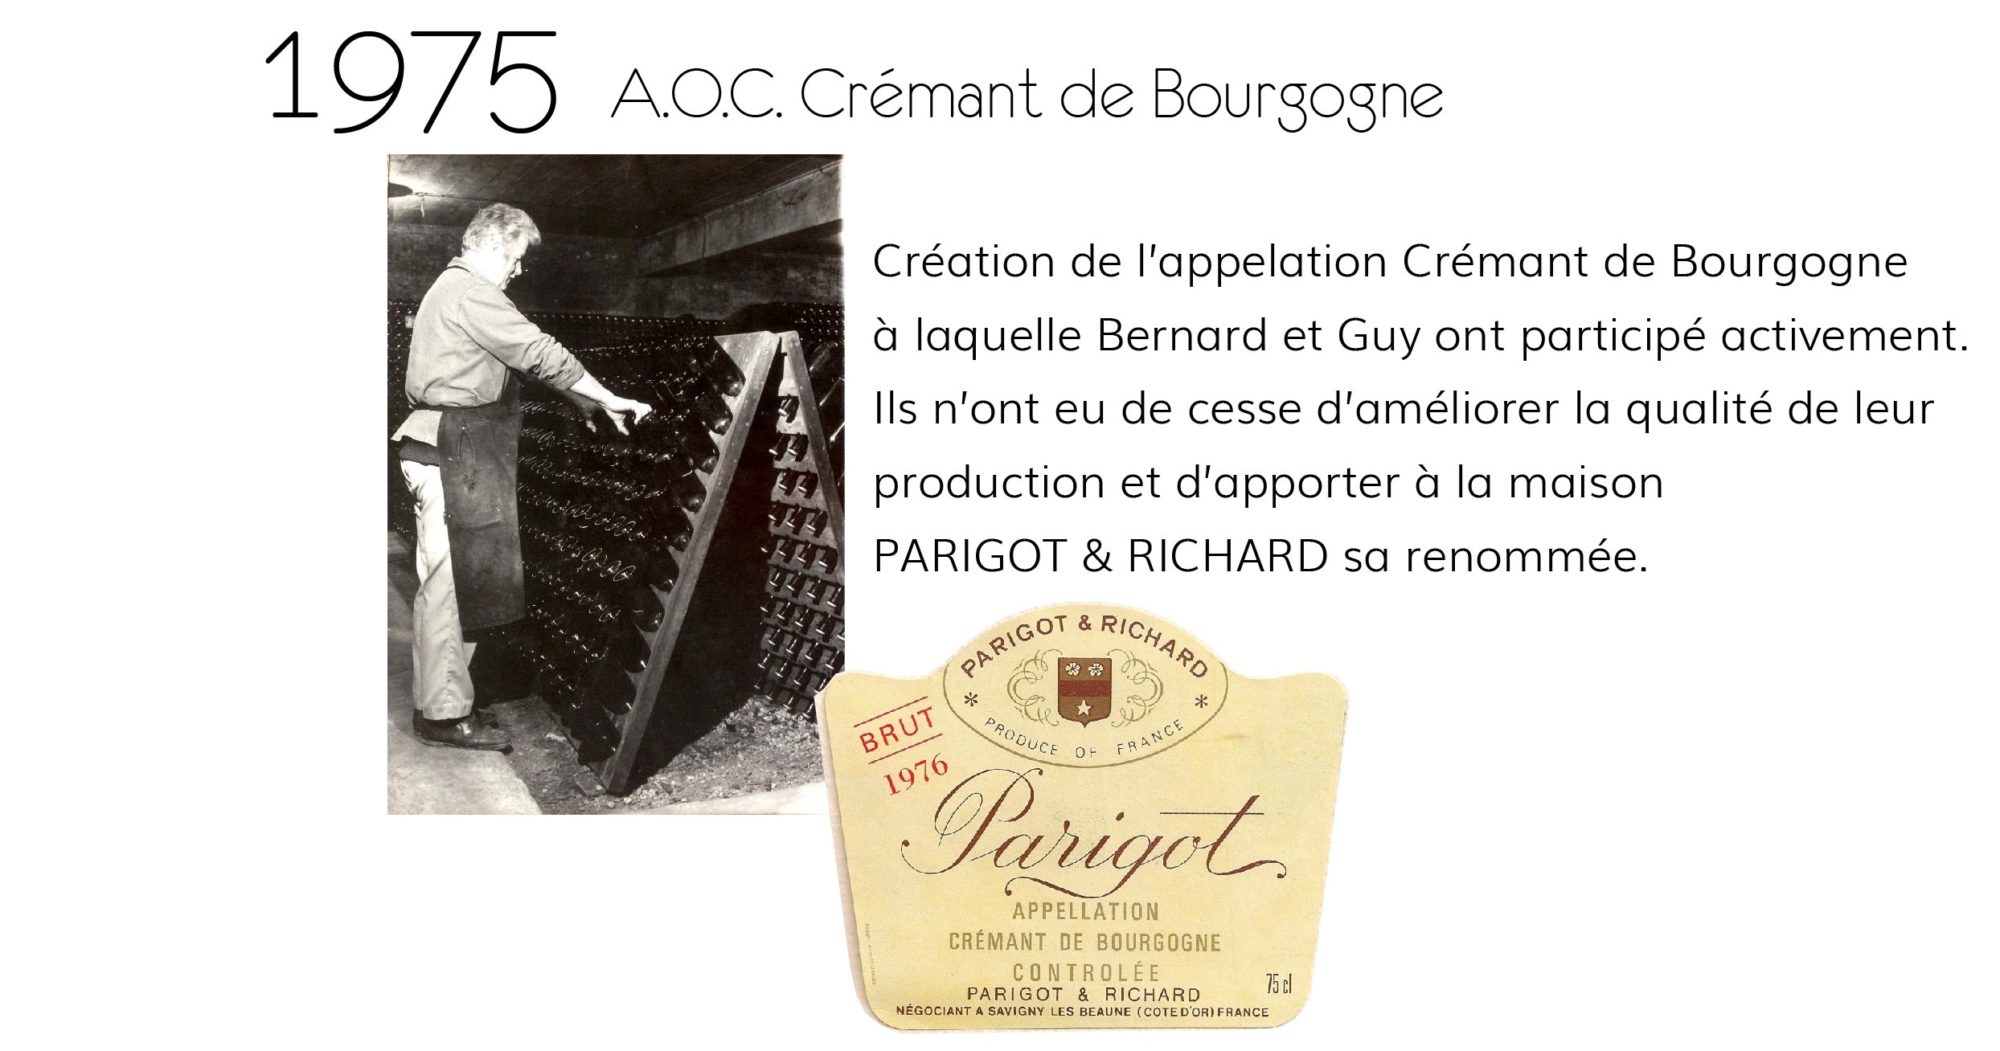 1975 AOC Crémant de Bourgogne - Parigot